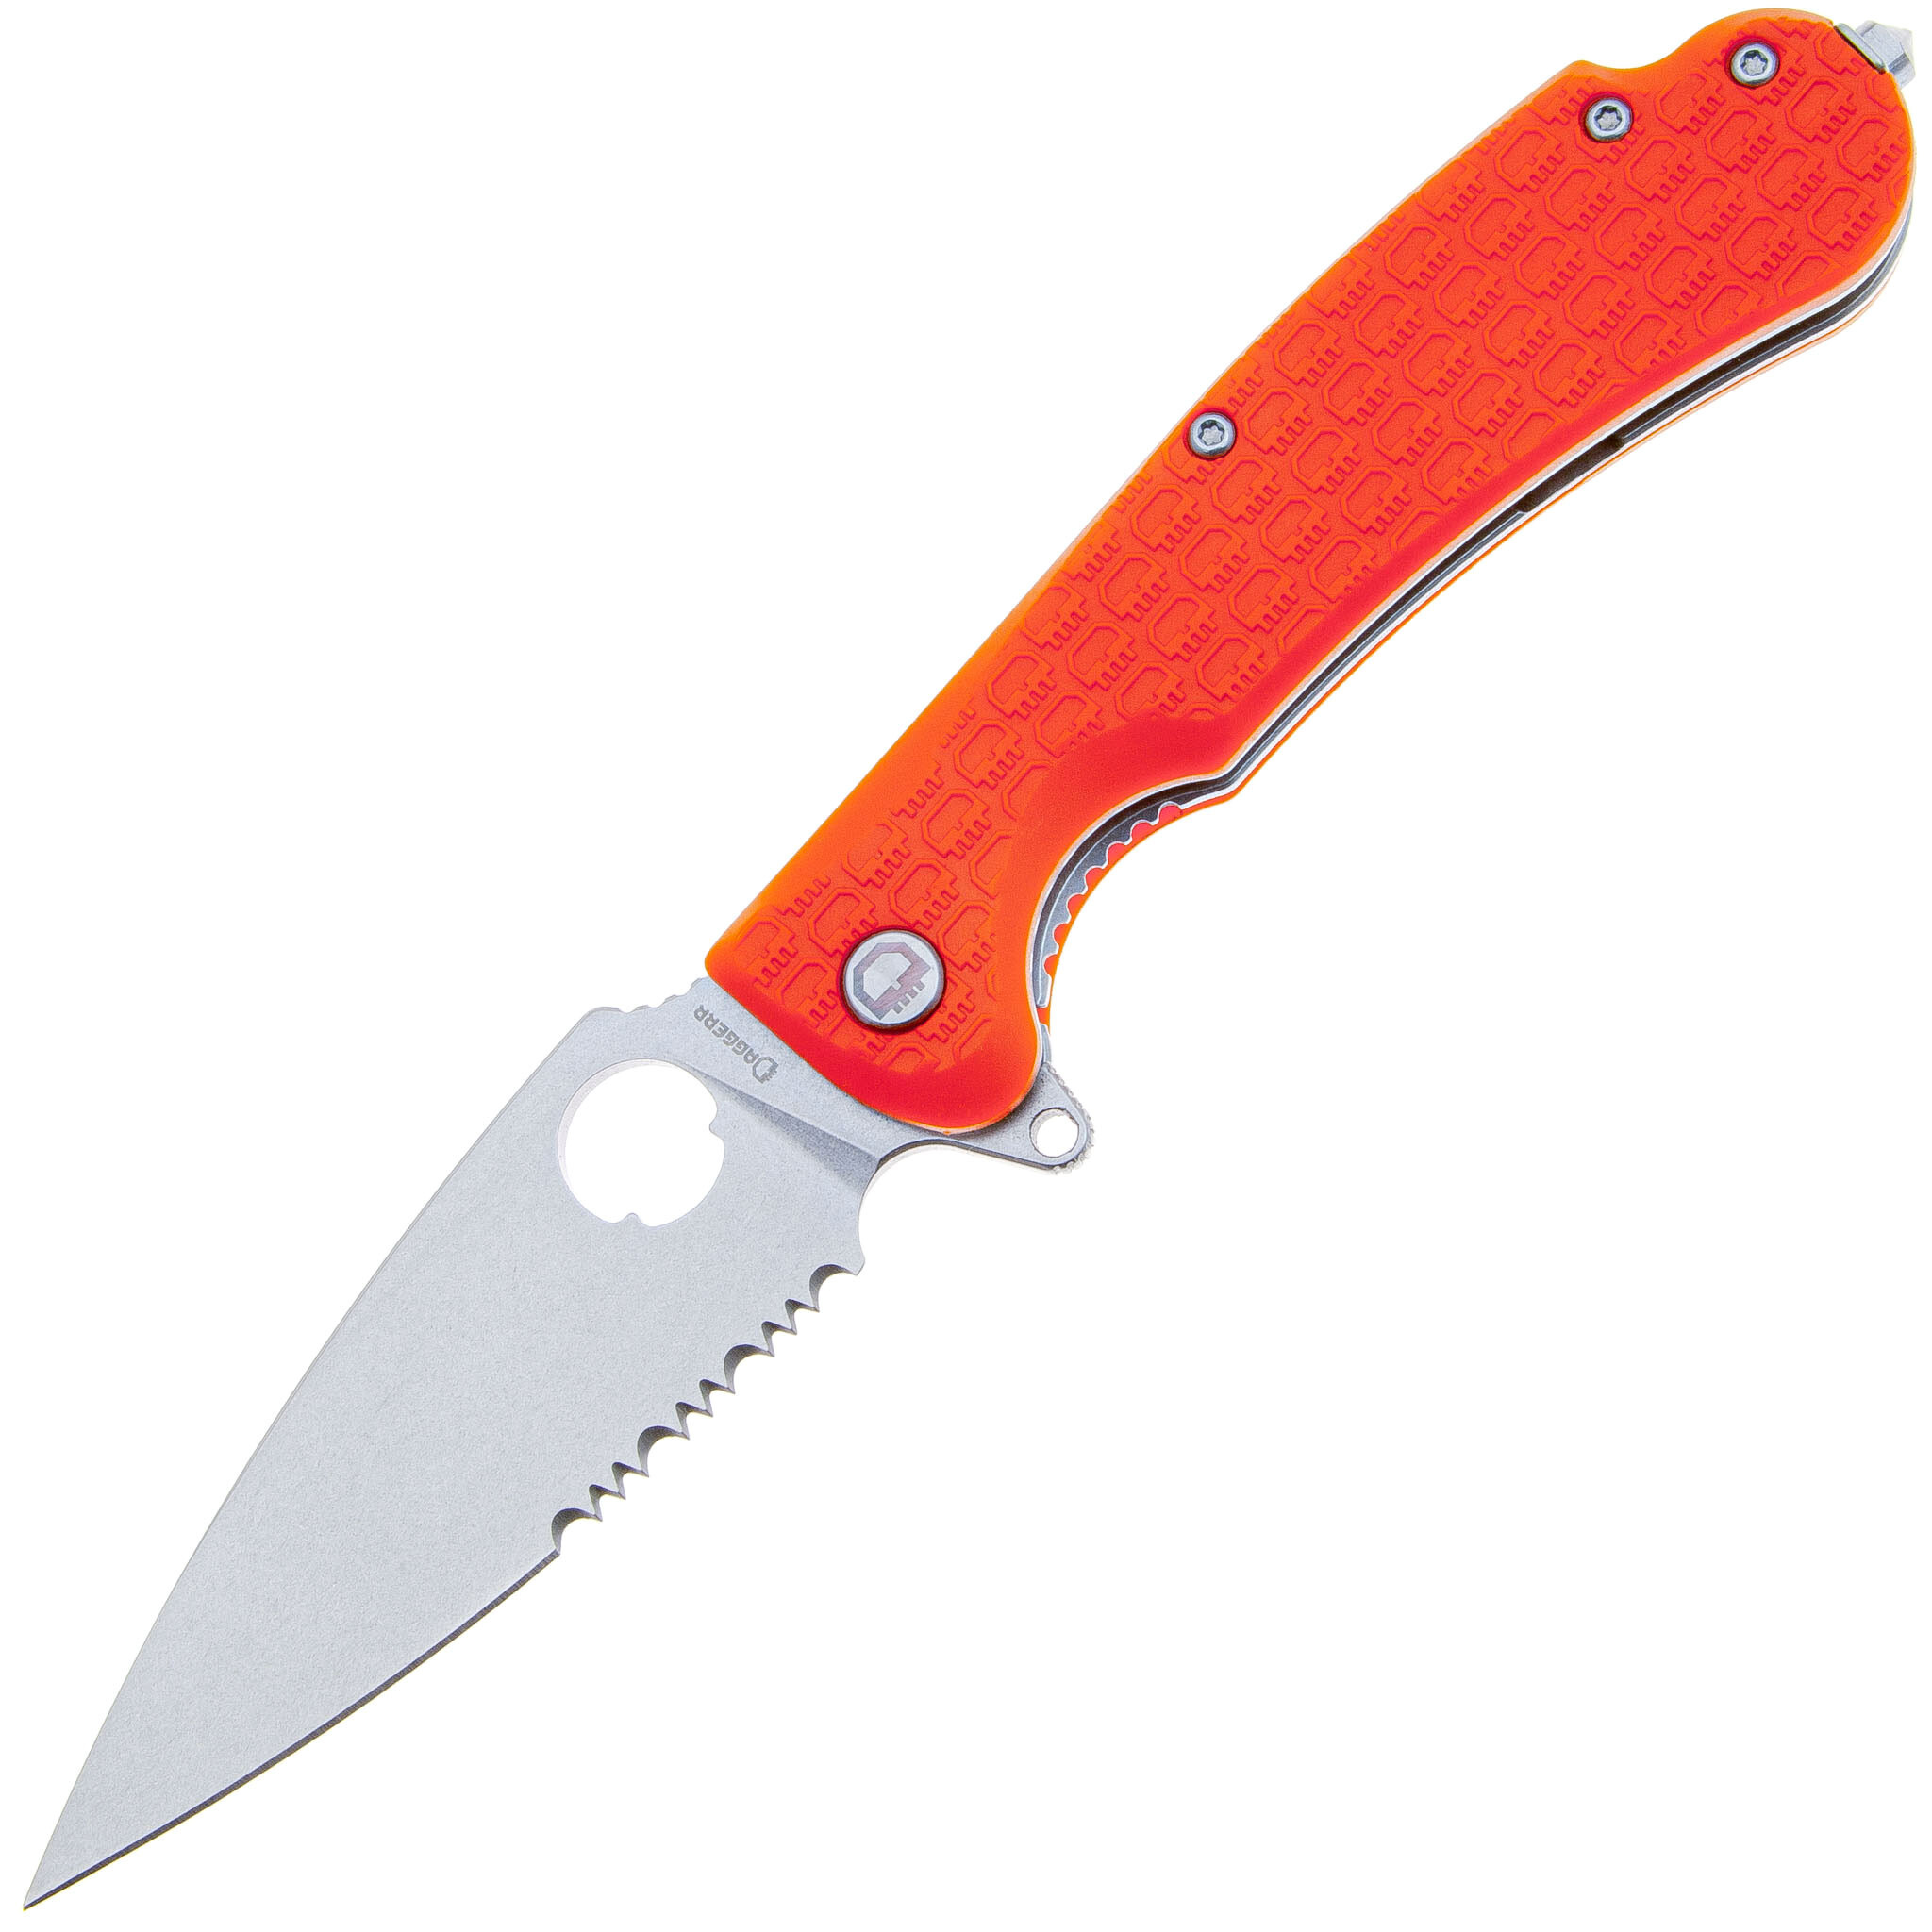 Складной нож Daggerr Resident Orange SW Serrated , сталь 8Cr14MoV, рукоять FRN